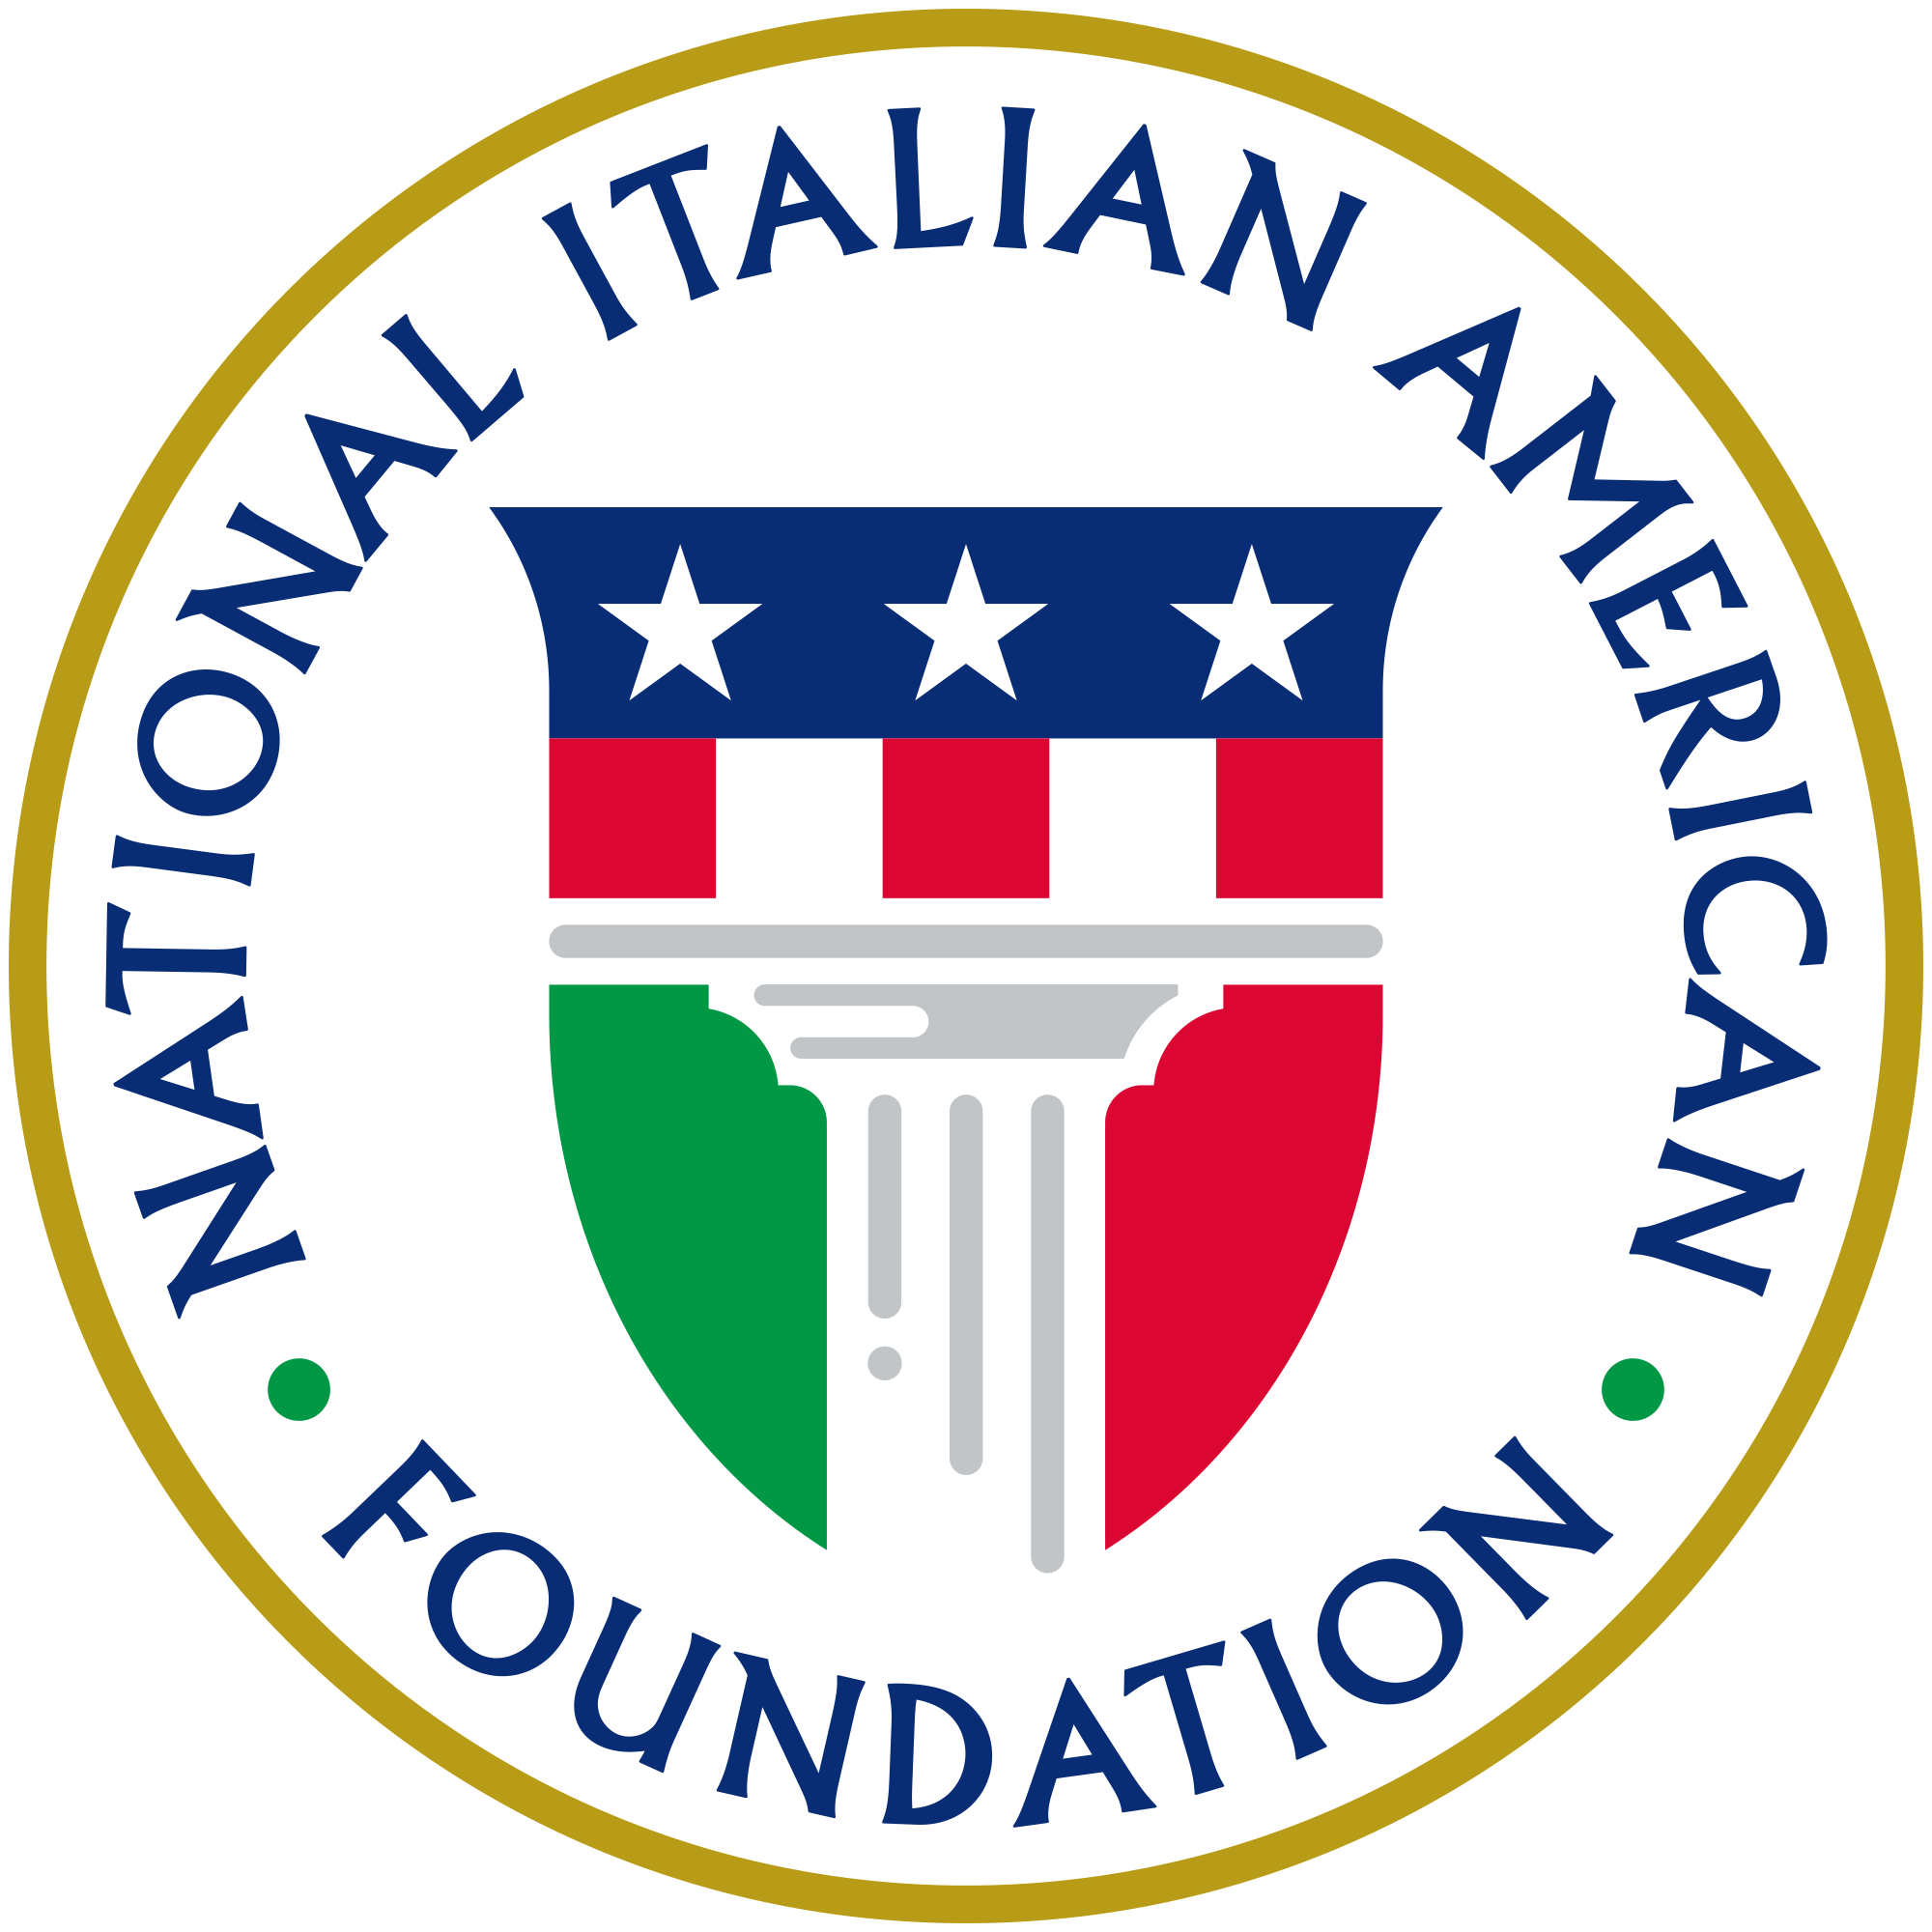 NIAF logo